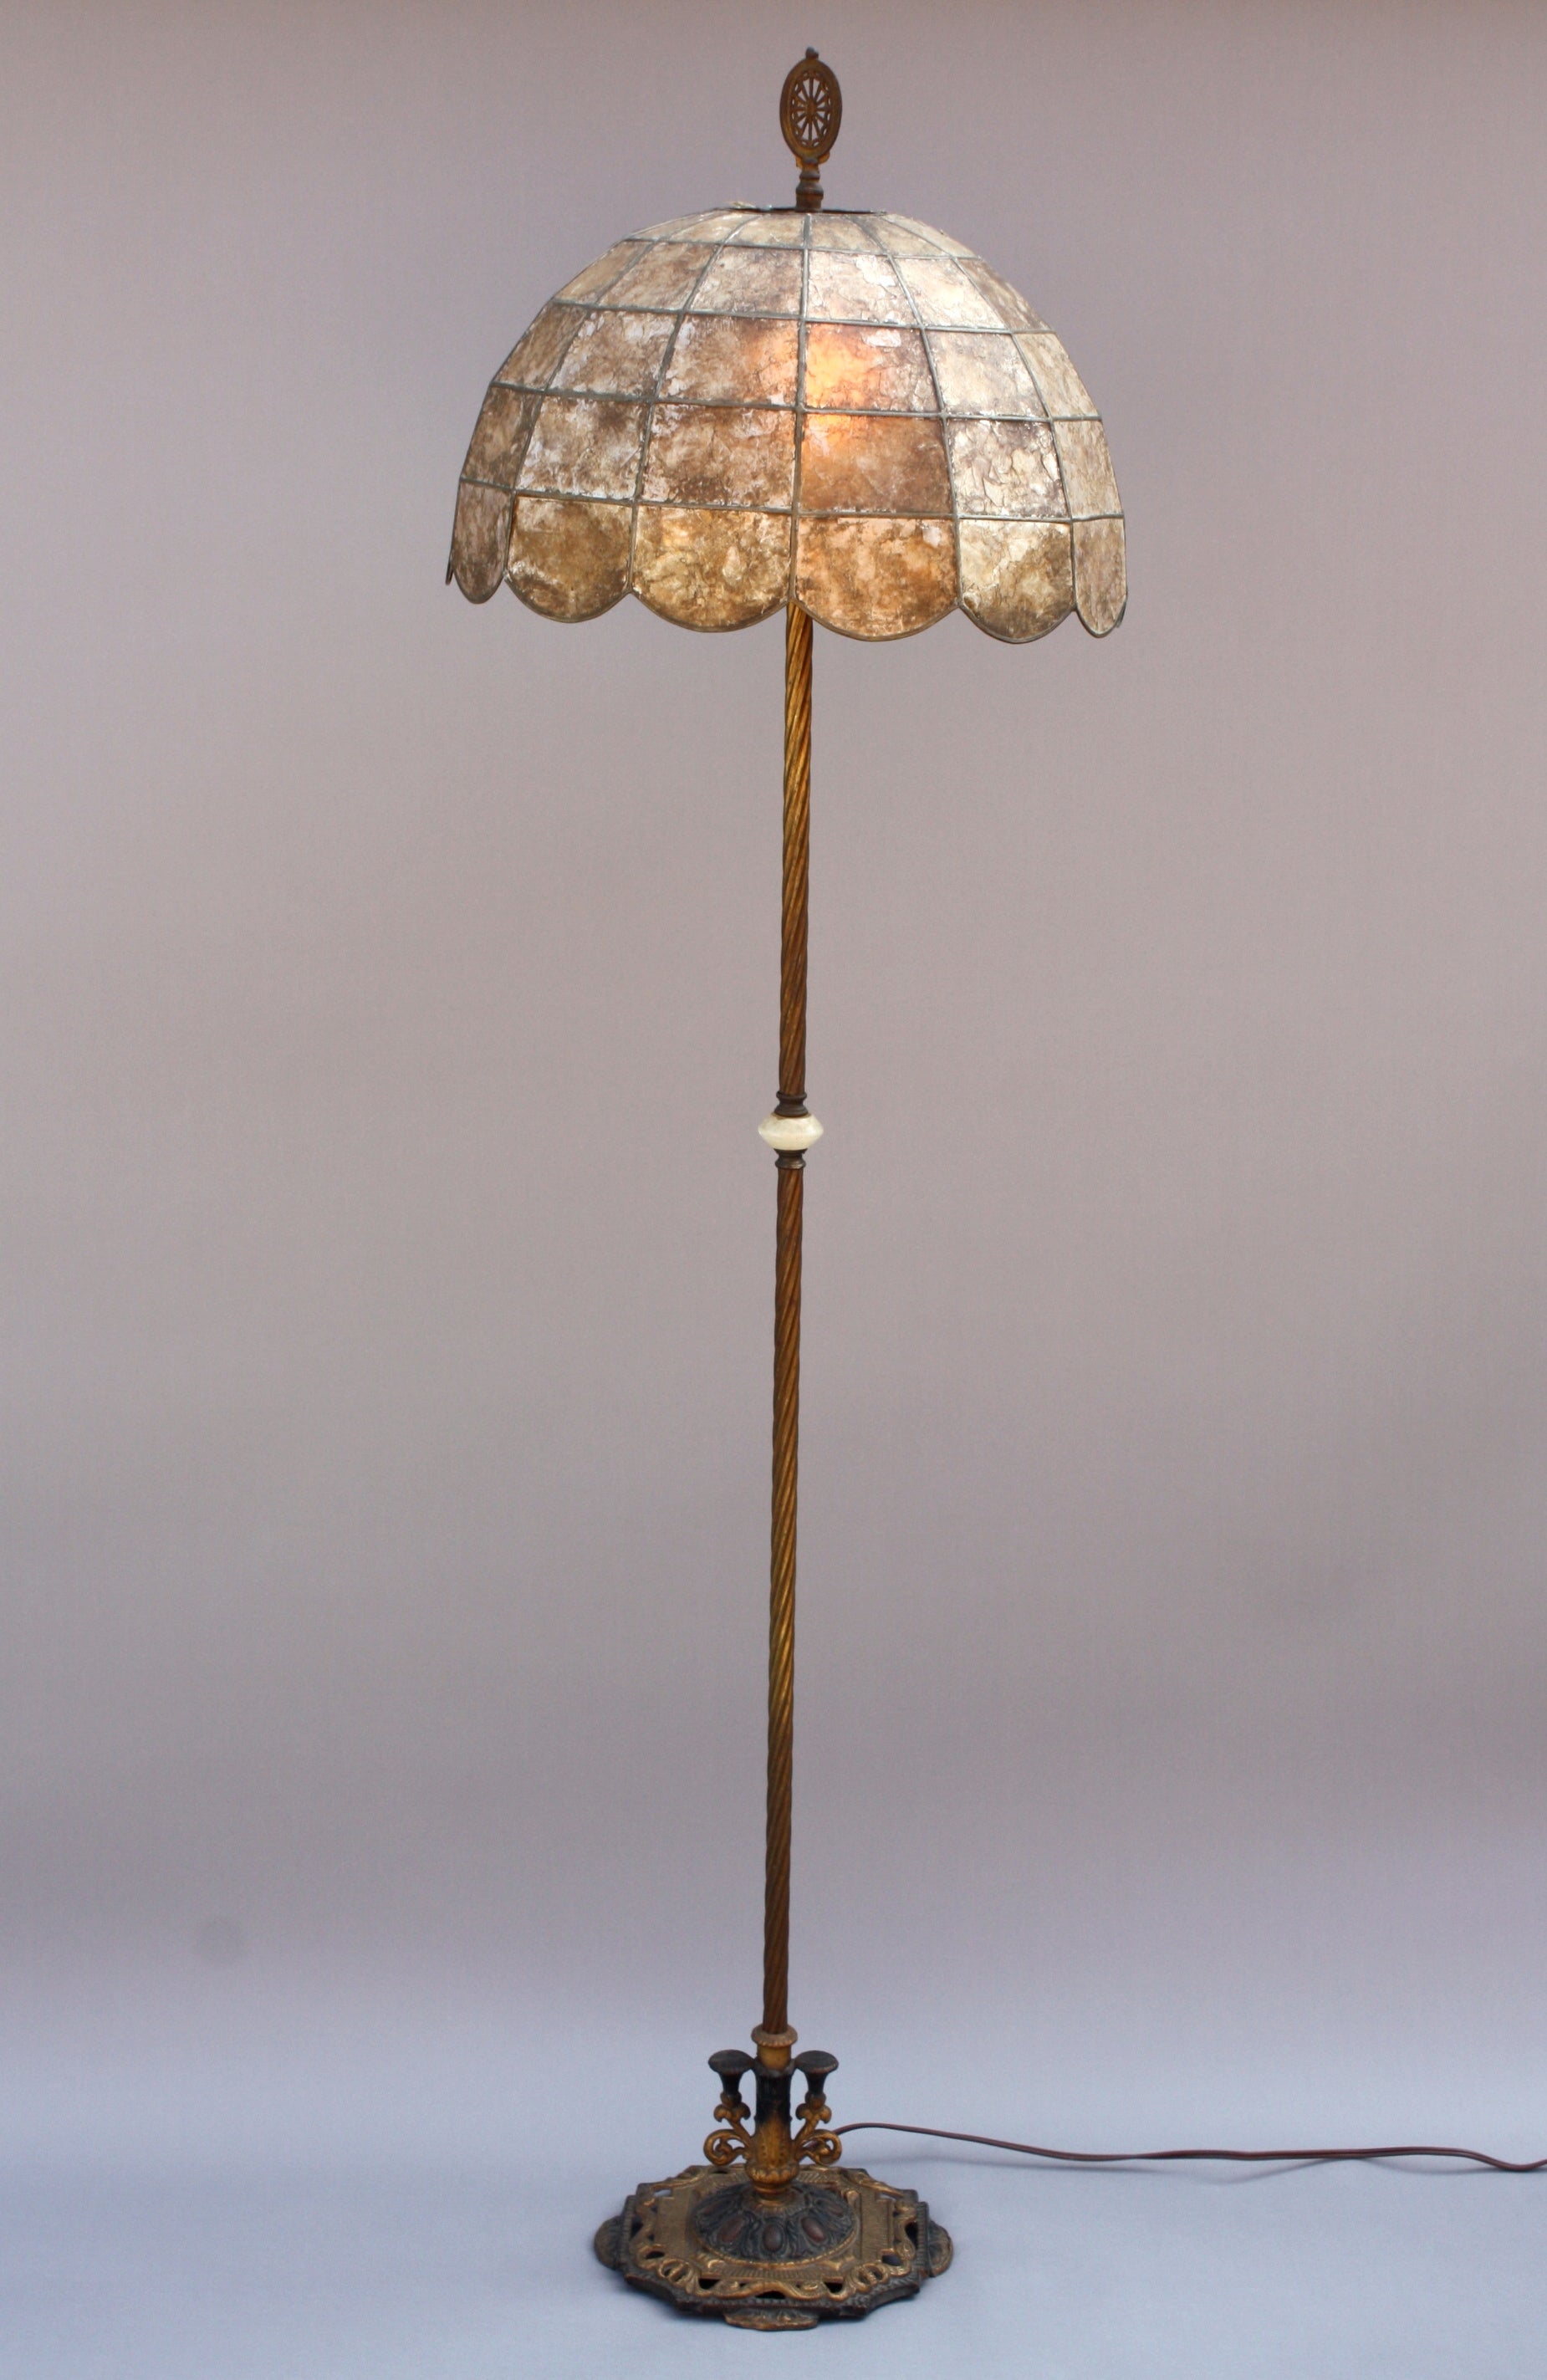 Antique 1920's Floor Lamp With Original Mica Shade